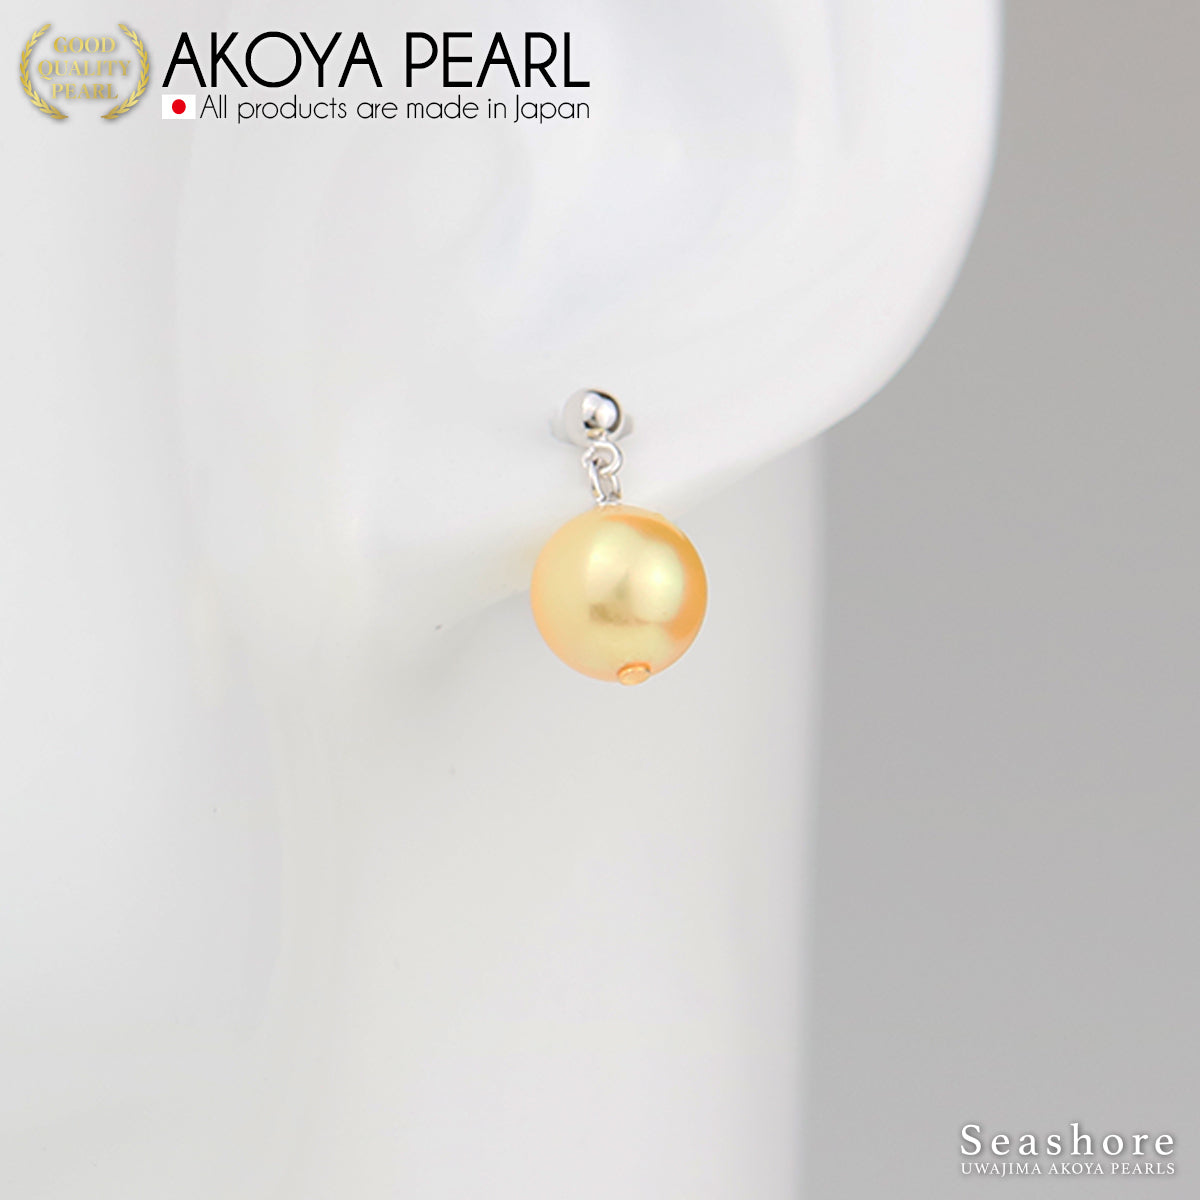 [金 Akoya] 珍珠耳环/耳环 [8.0-8.5mm] 摆动型黄铜/钛 Akoya 珍珠